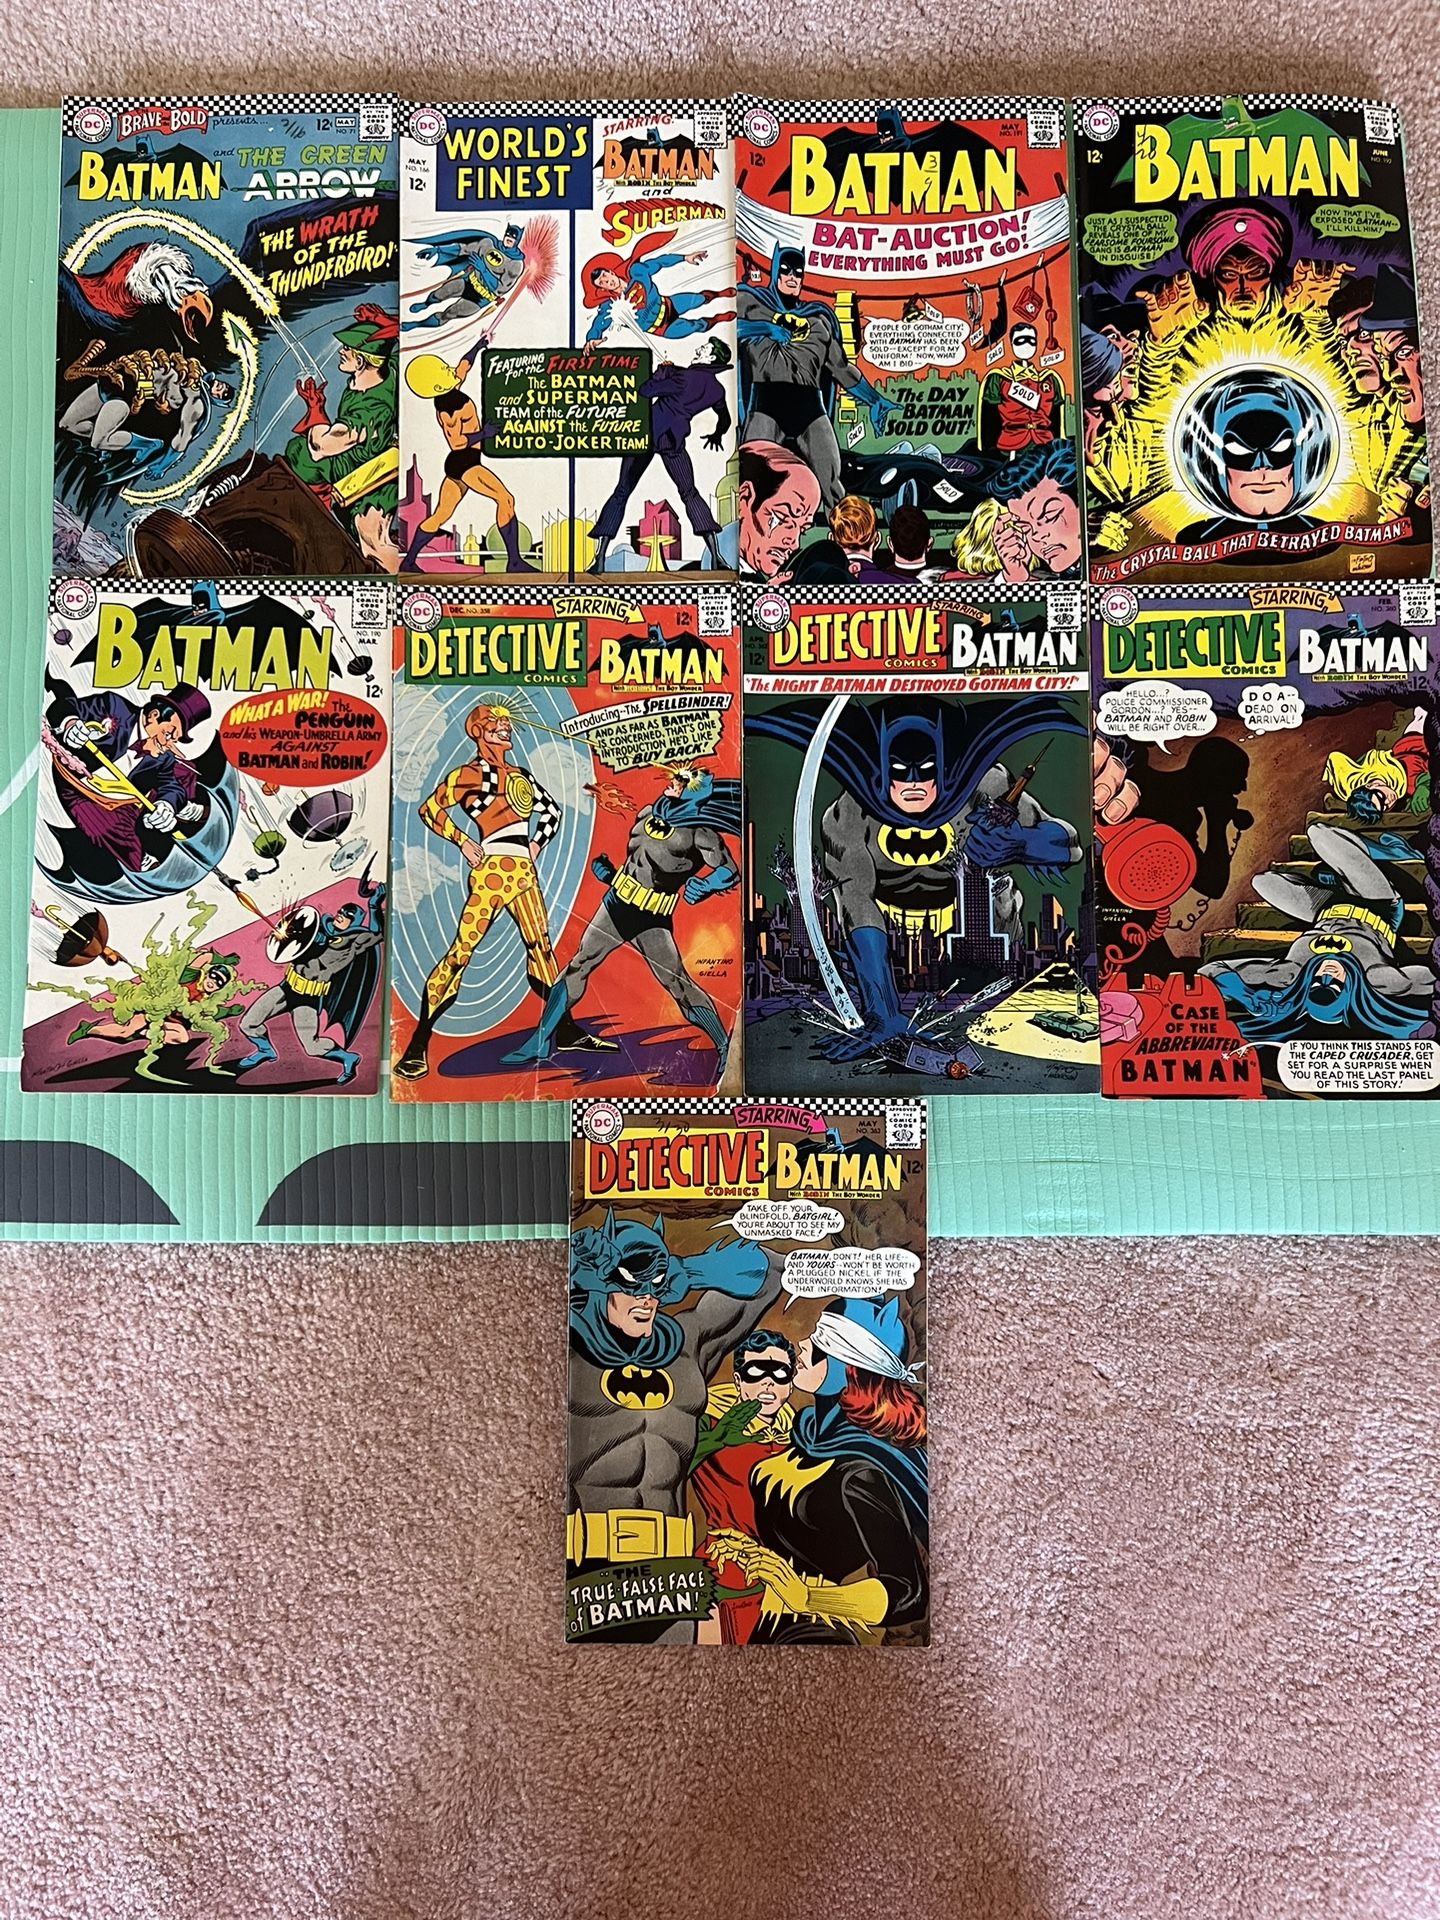 9 Comics 1(contact info removed) Batman